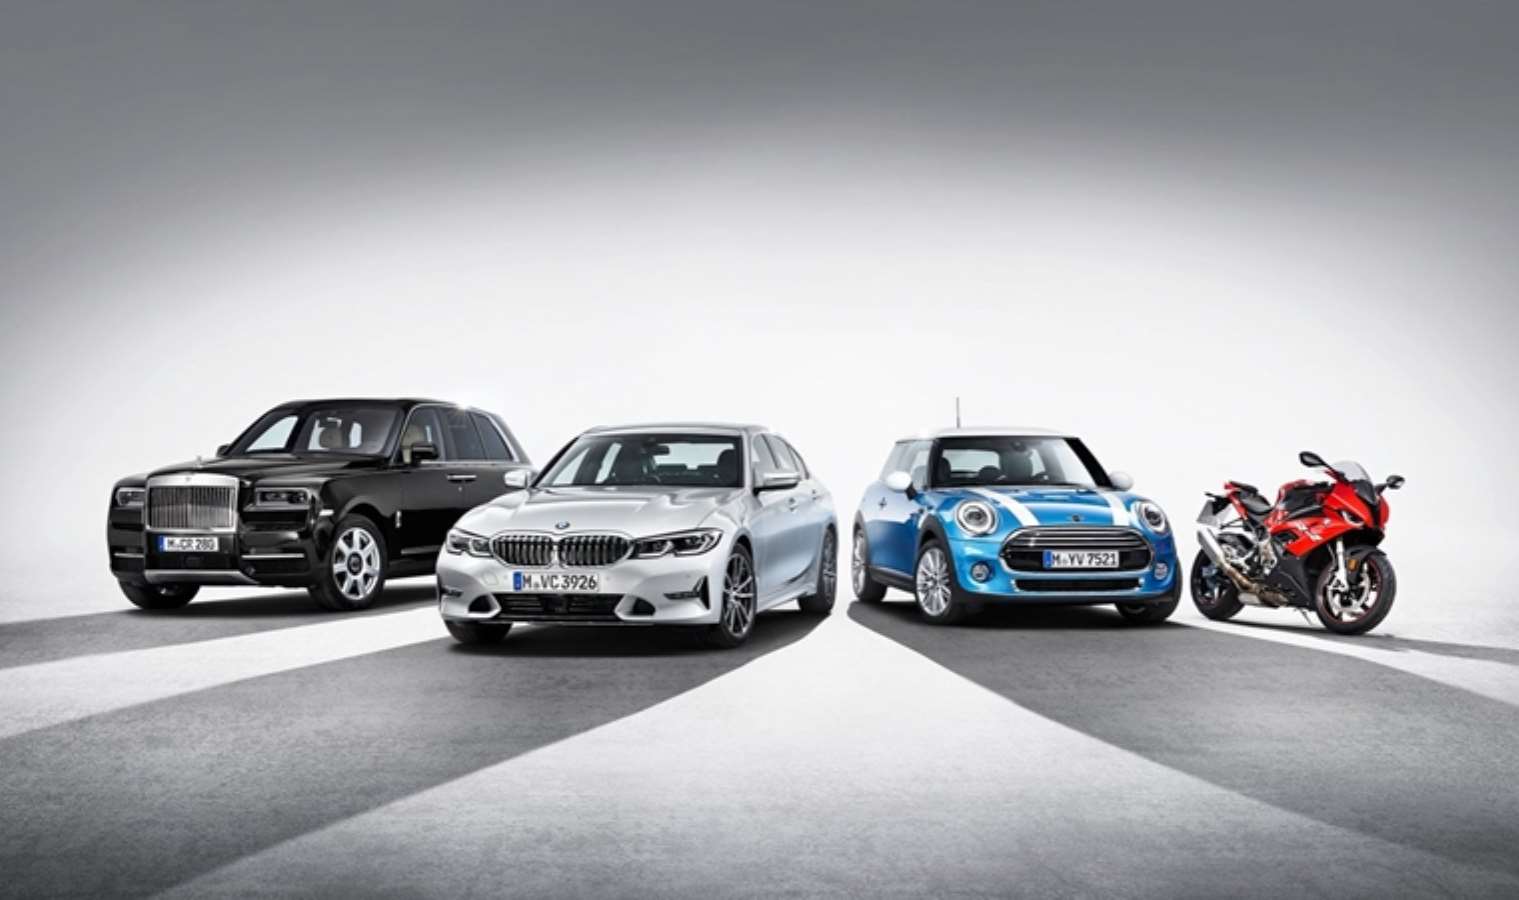 BMW elektrikli araç satışlarında rekor artış: 2024 rotası da belli oldu